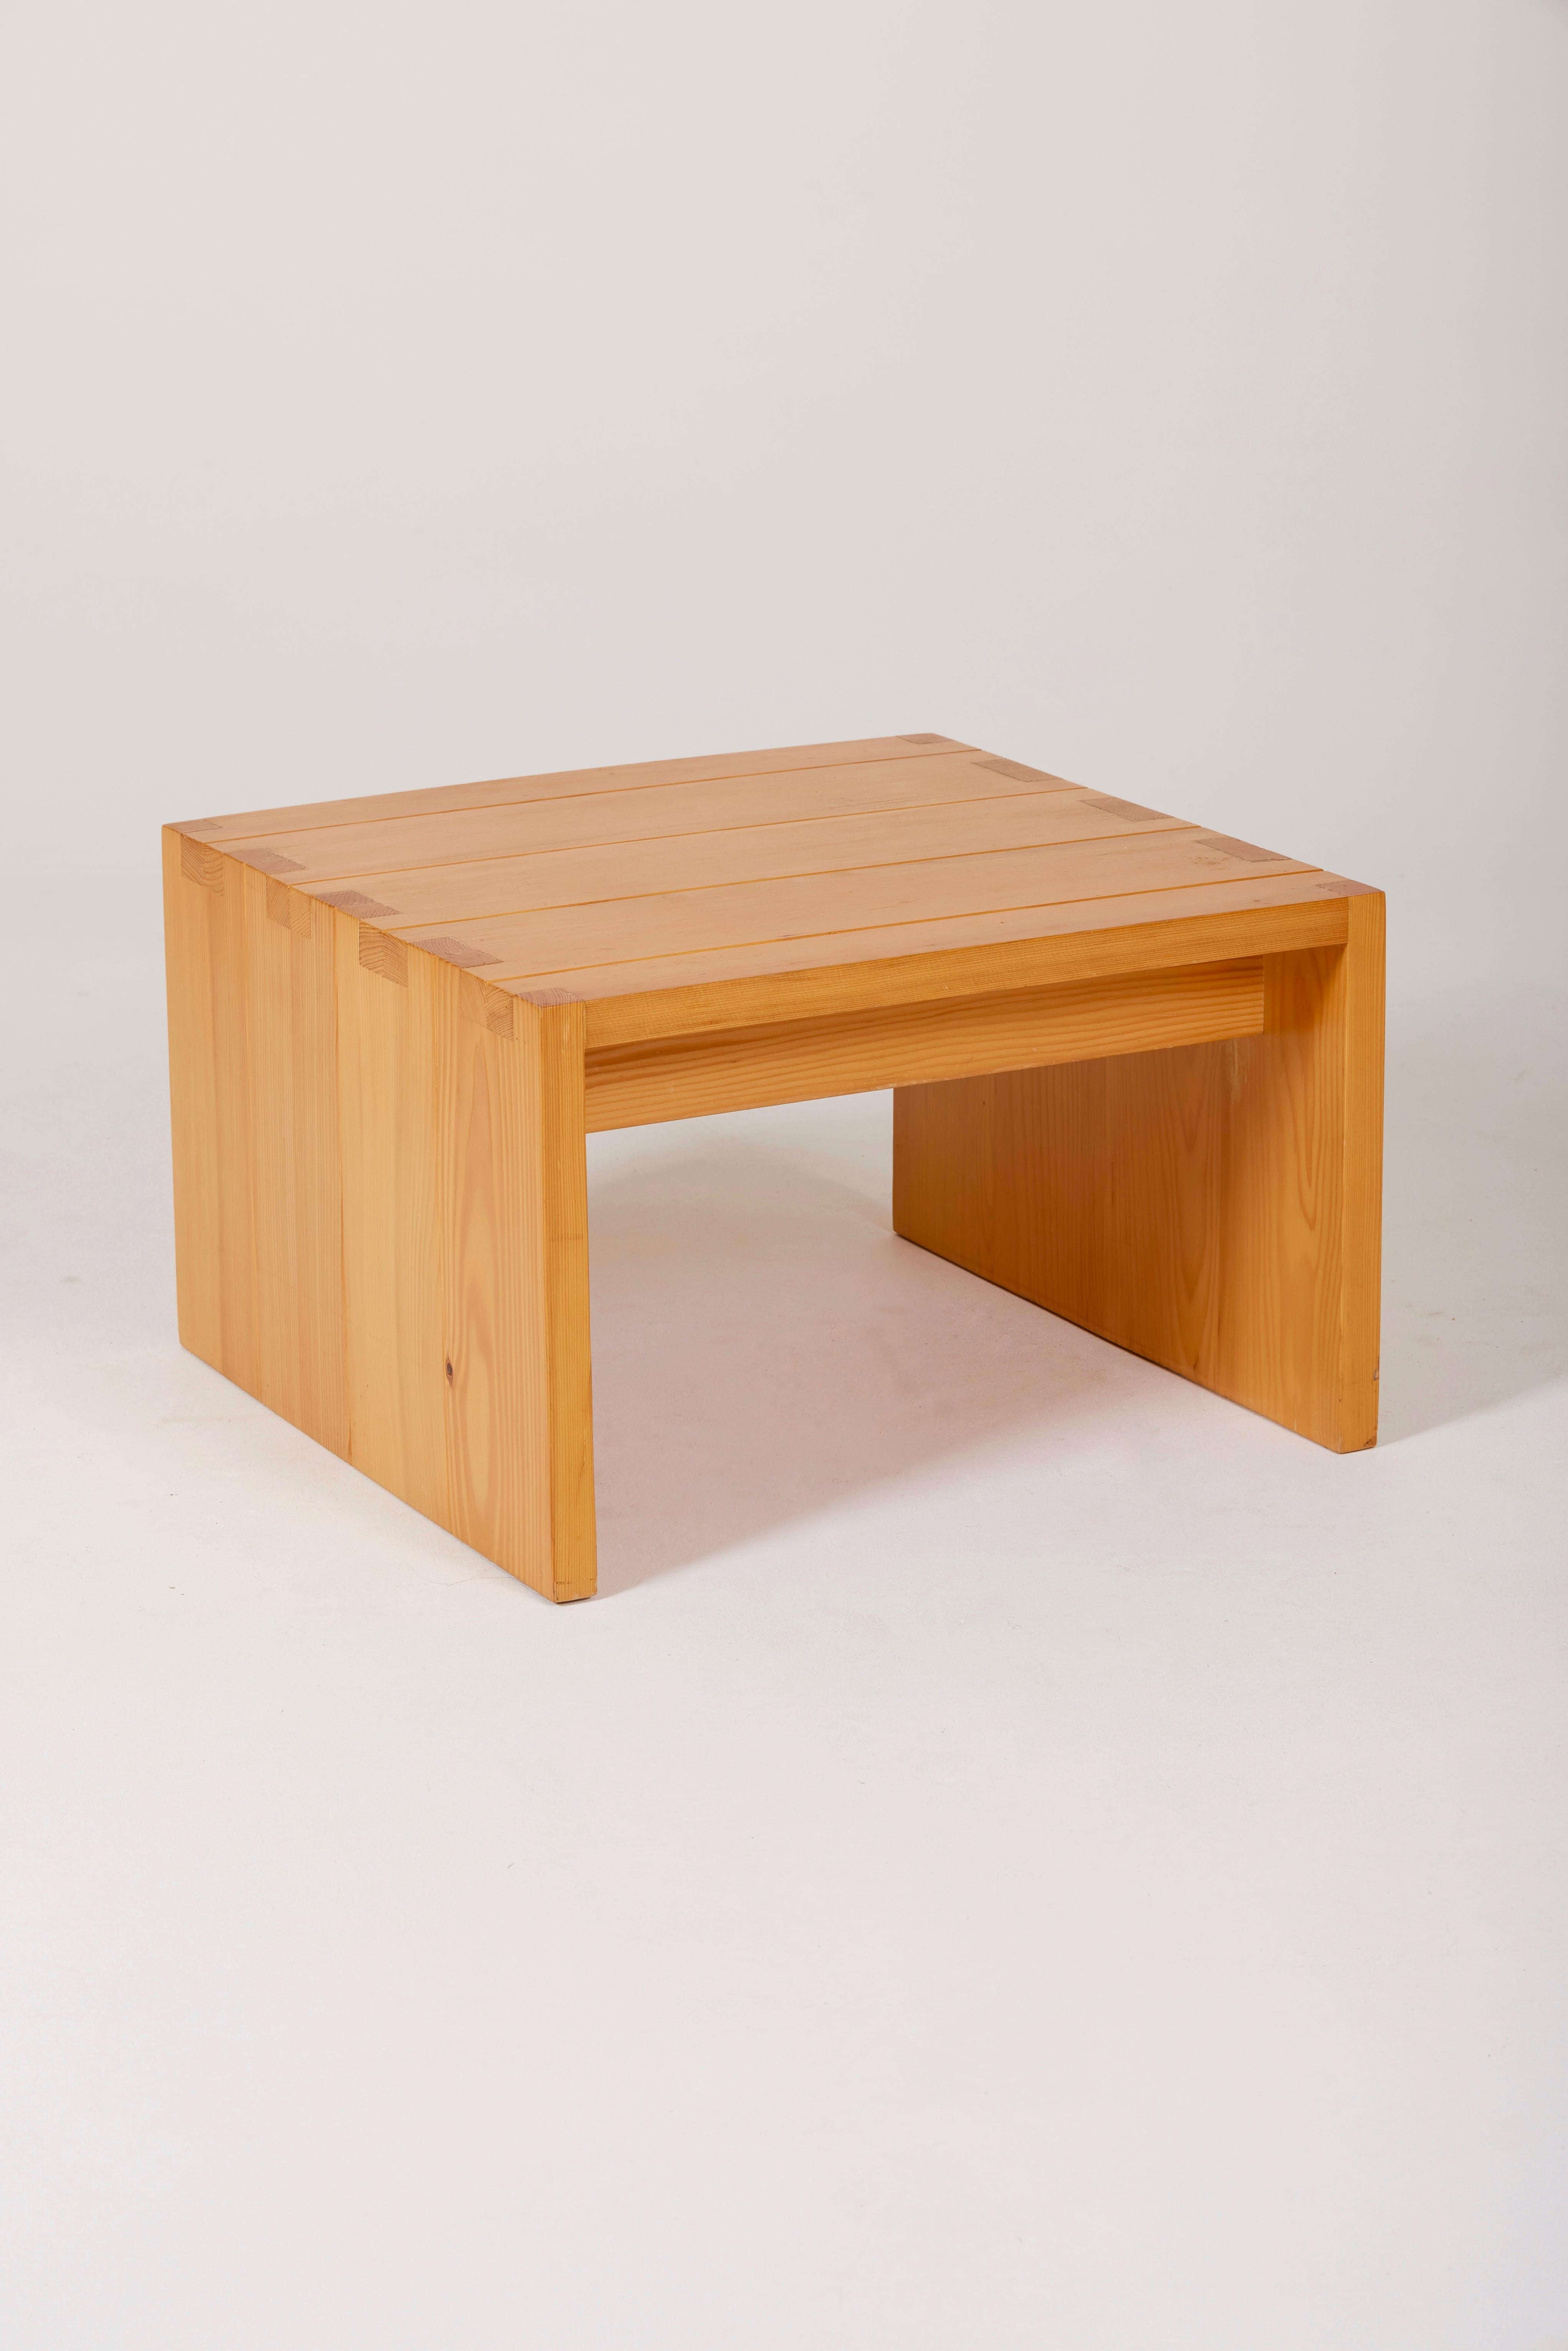 Table basse en pin massif réalisée par le designer Roland Haeusler pour la maison Regain dans les années 1960. Belle condition.

LP1137